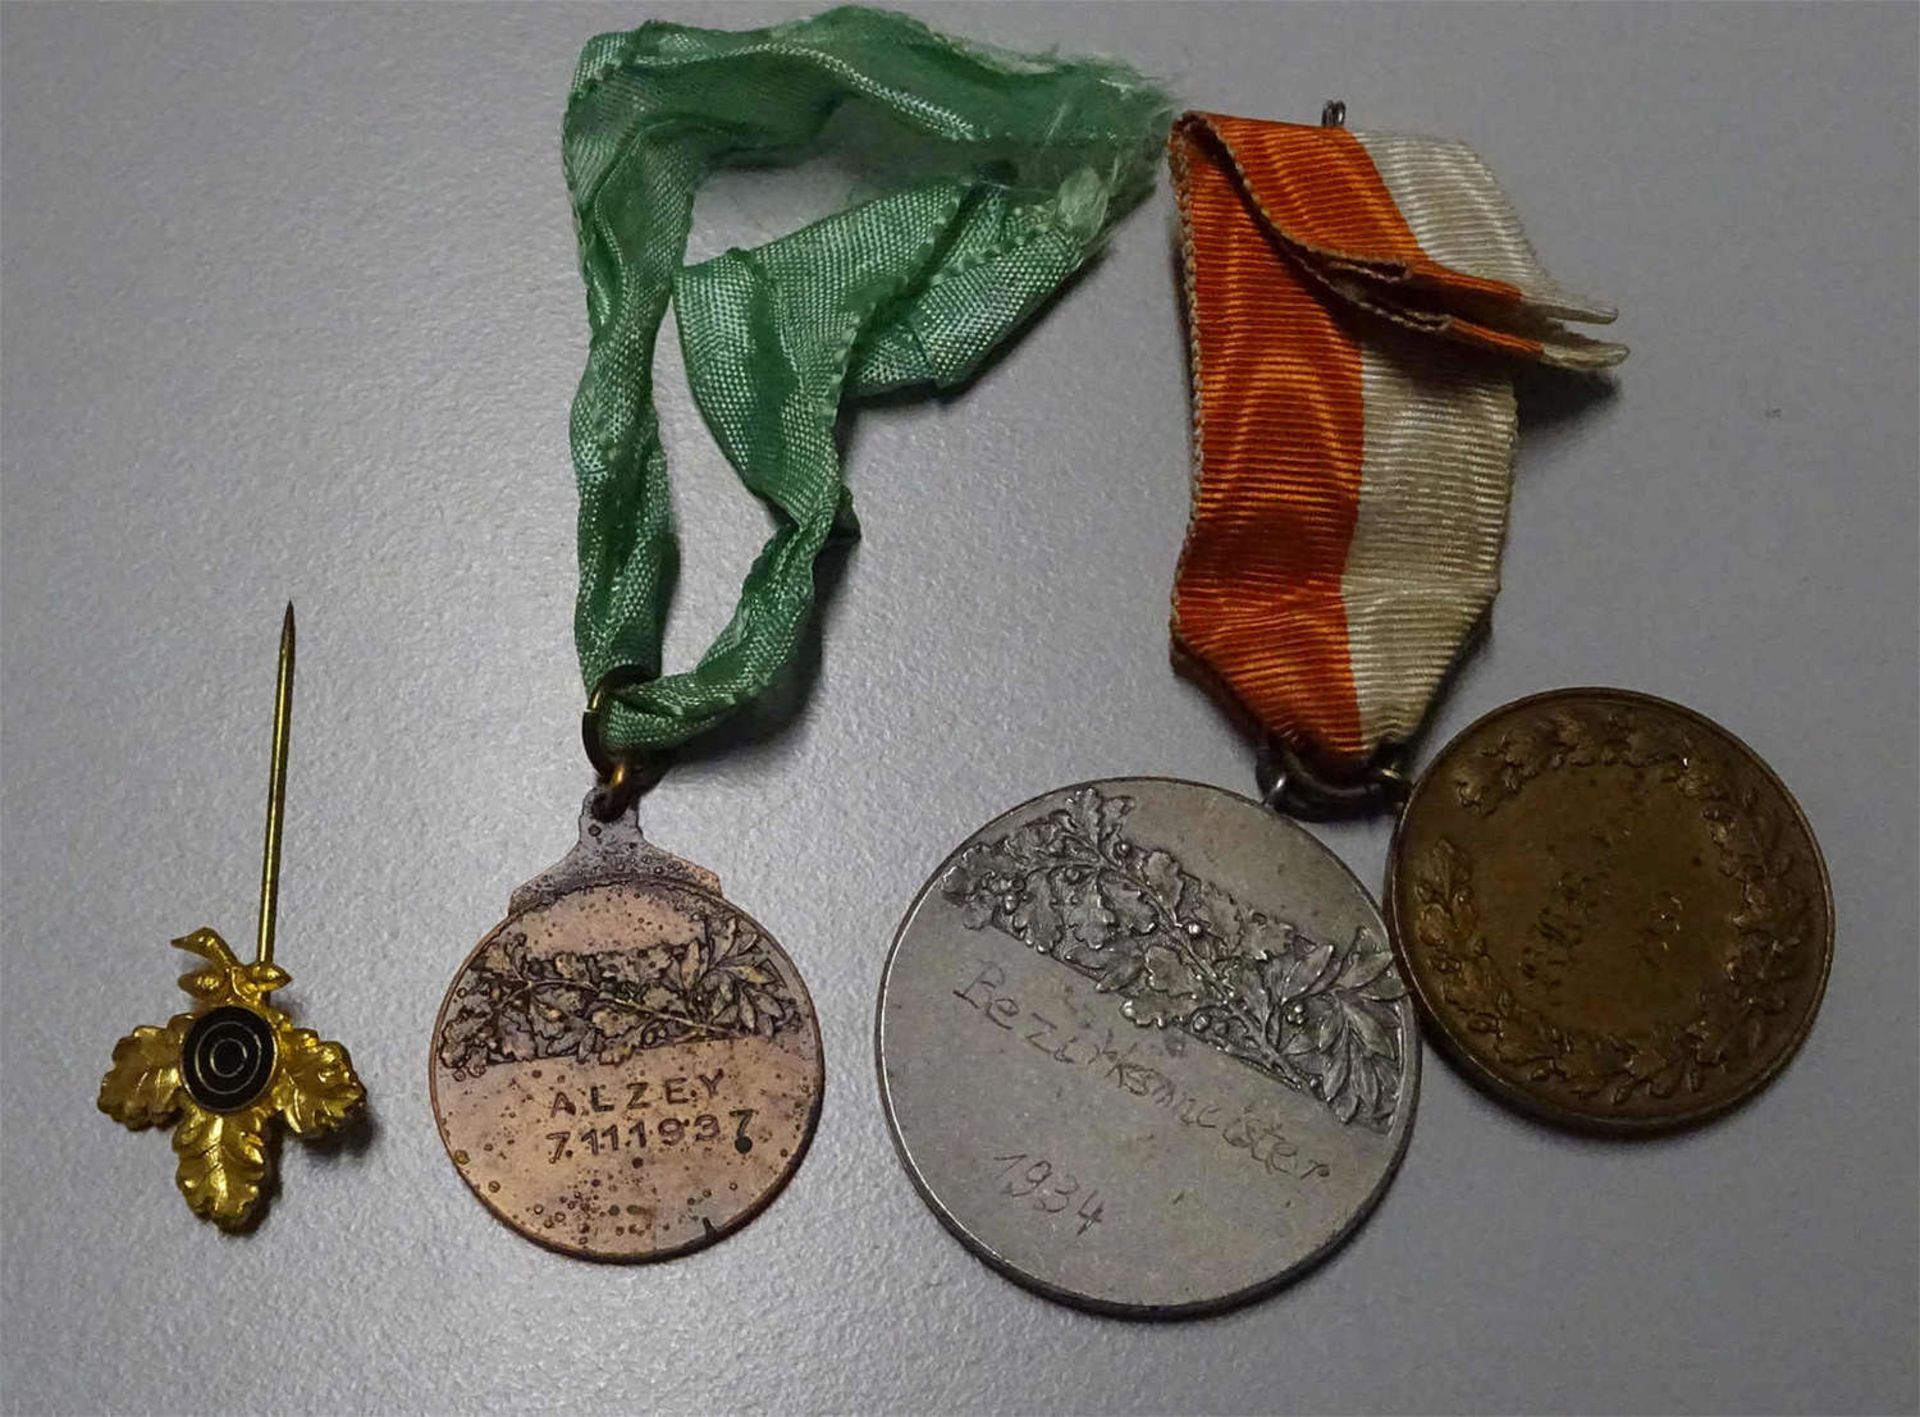 3 Schützenmedaillen "Hassia", 1x Bezirksmeister 1934, 1x K.K. Hassia 1932, 1x Alzey 7.11.1937, sowie - Bild 2 aus 2